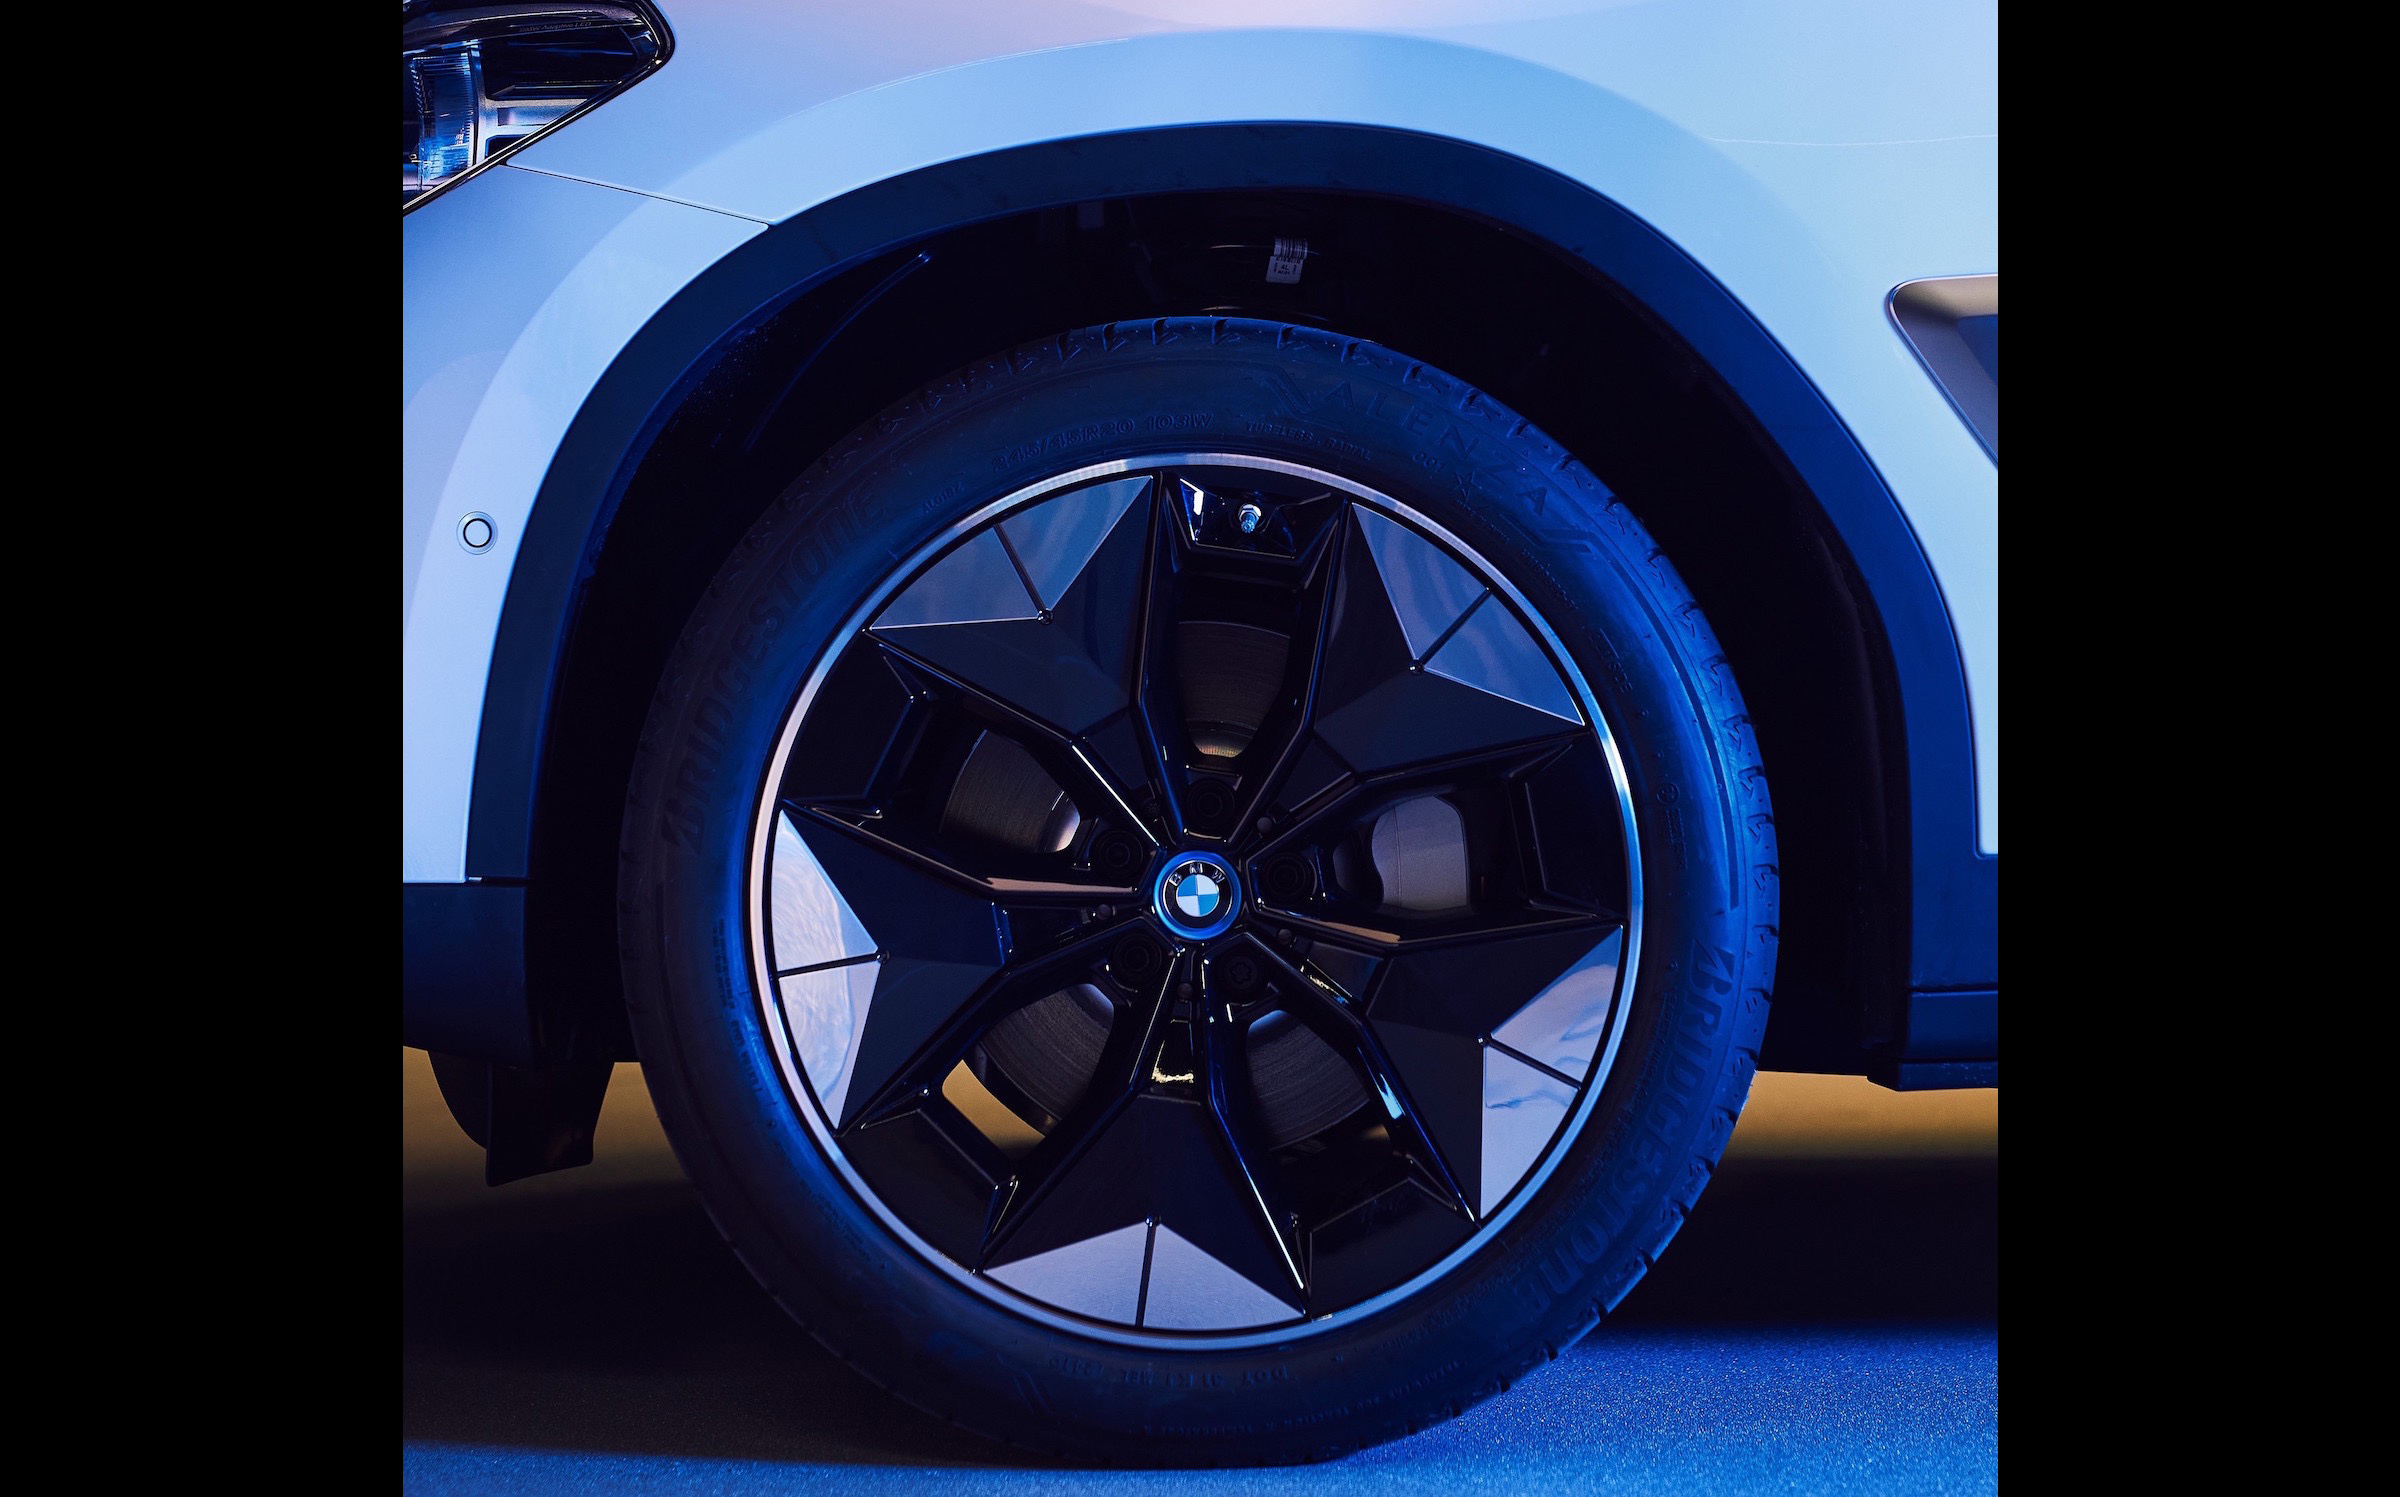 BMW iX3 debuting ‘Aerodynamic Wheel’, adds 10km range